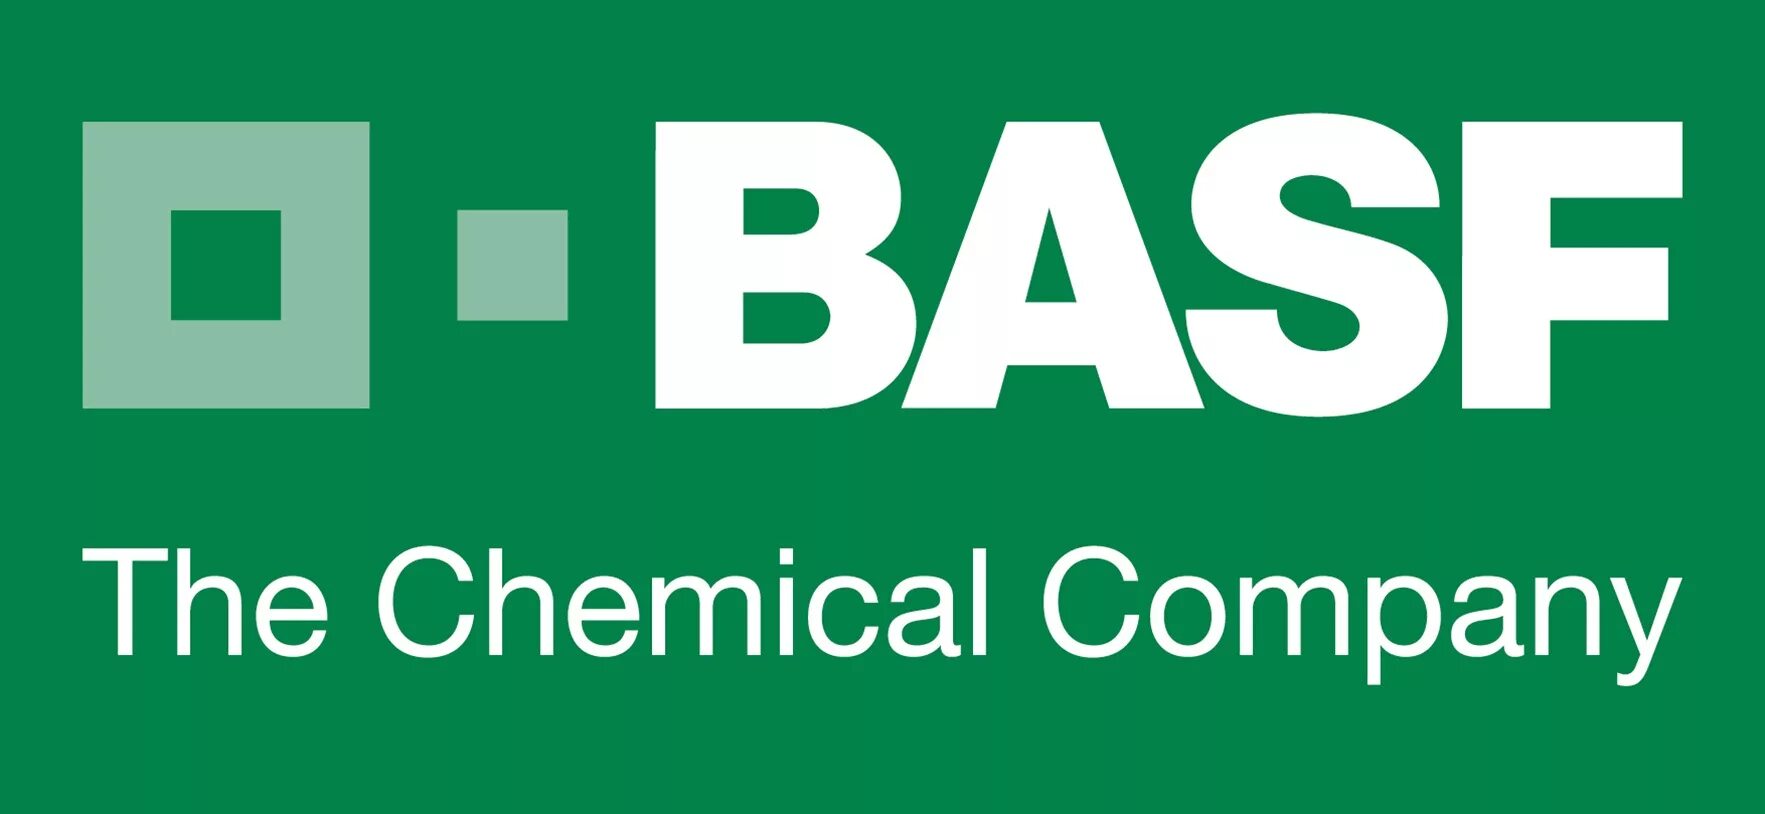 Фирма BASF. BASF эмблема. BASF химические компании. BASF se логотип. Chemical companies